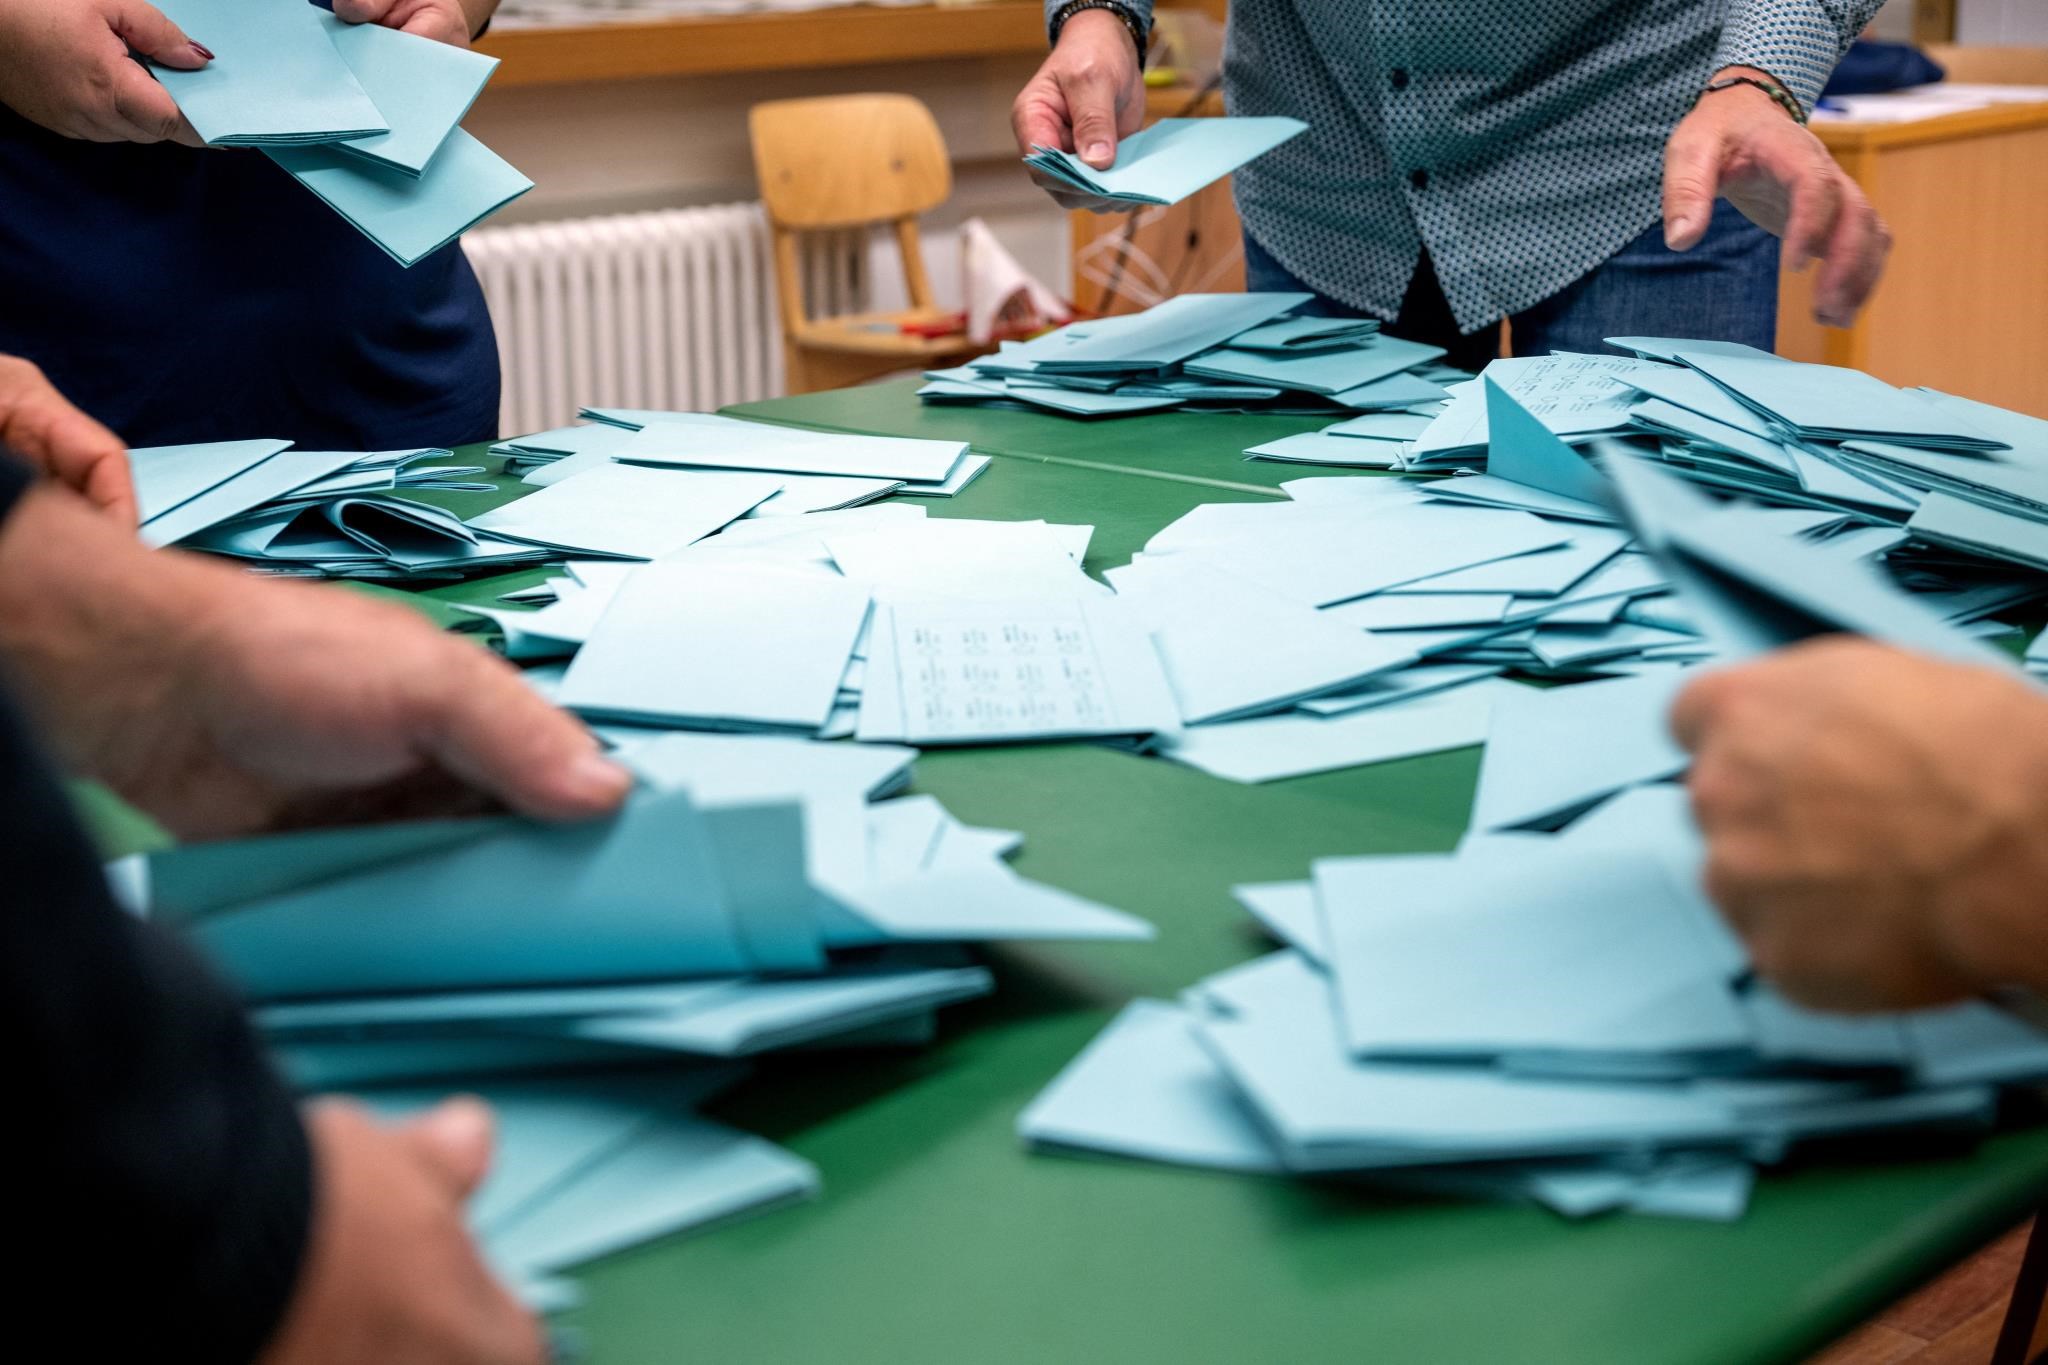 Mundo: La Unión Social Cristiana de Baviera y la Unión Demócrata Cristiana del estado federado de Hesse ganaron las elecciones, según las encuestas de opinión